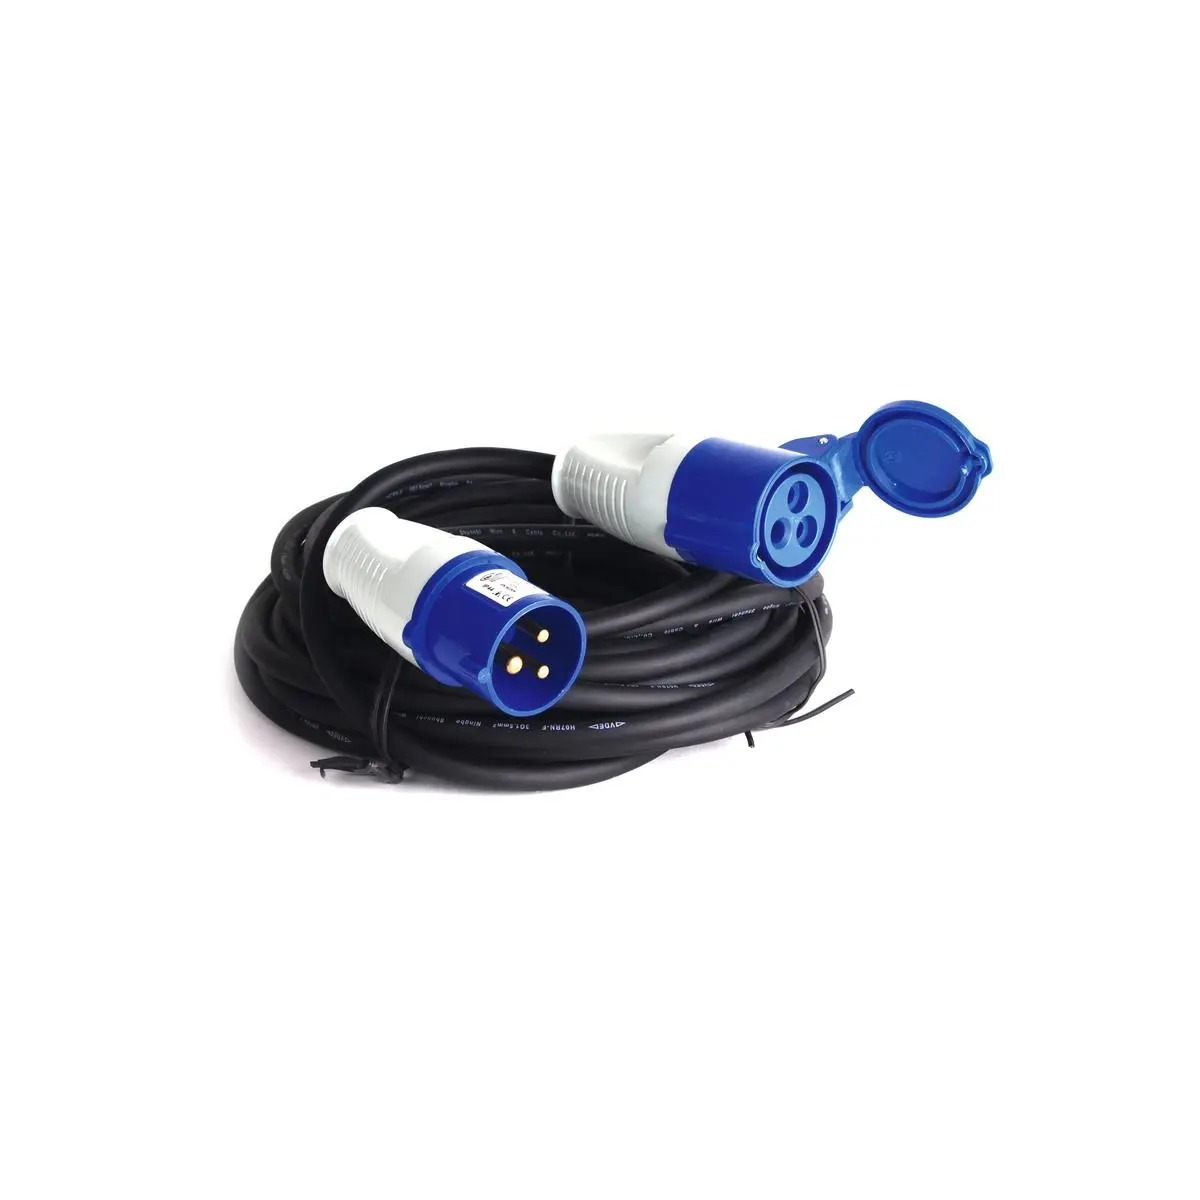 Cablu prelungitor Carbest 230V 10m